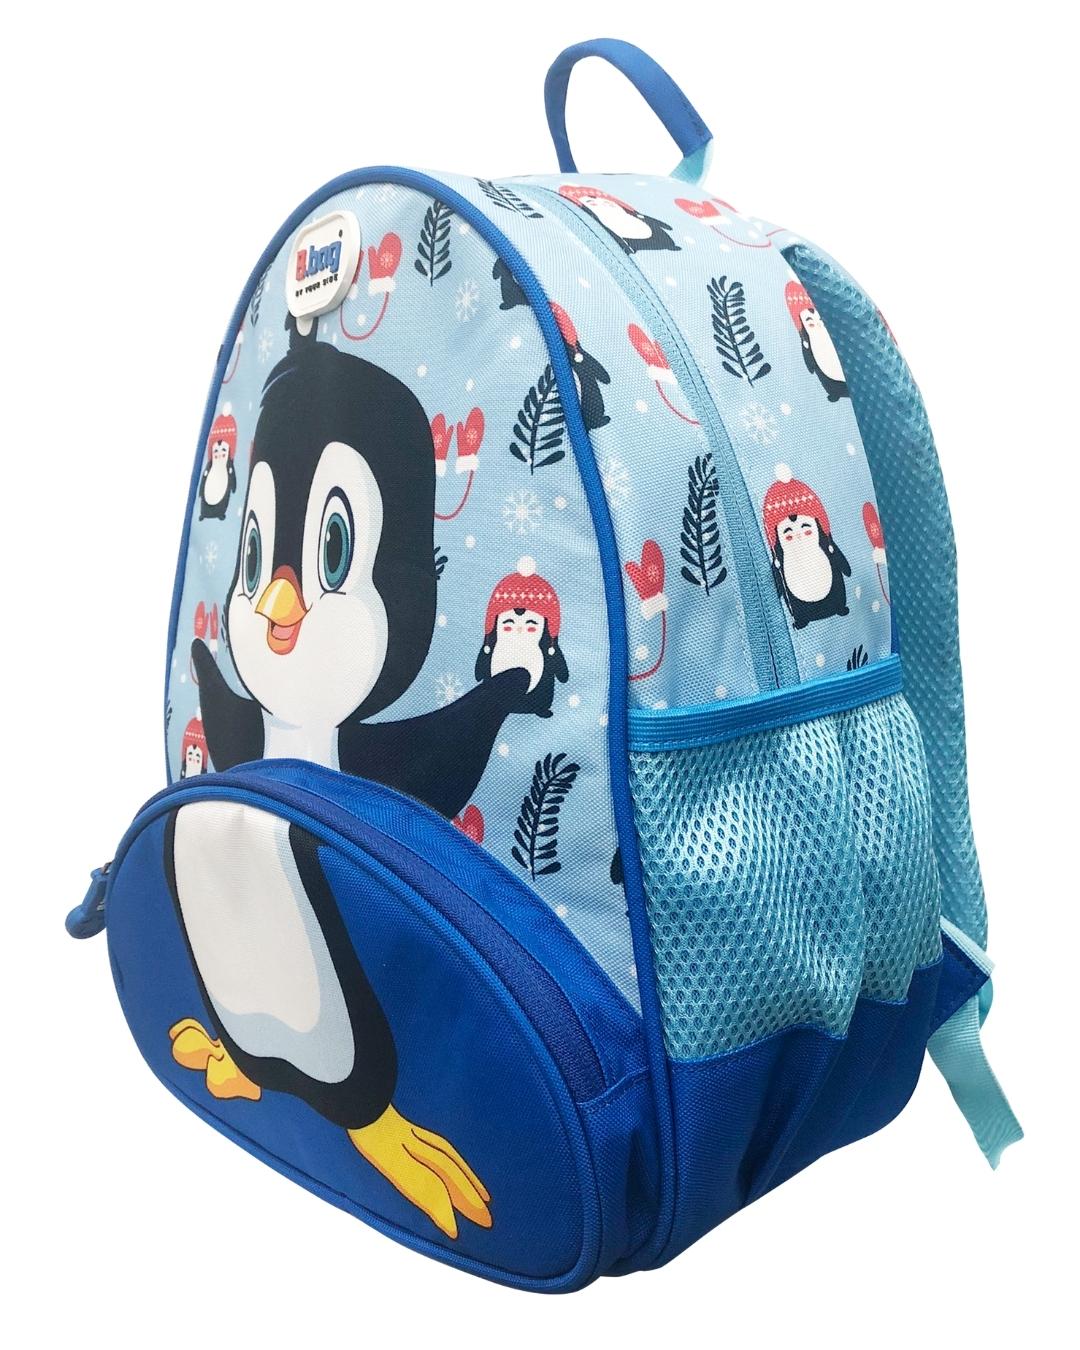 Balo cho bé mẫu giáo B.Bag Buddy - Penguin B-12-101 xanh